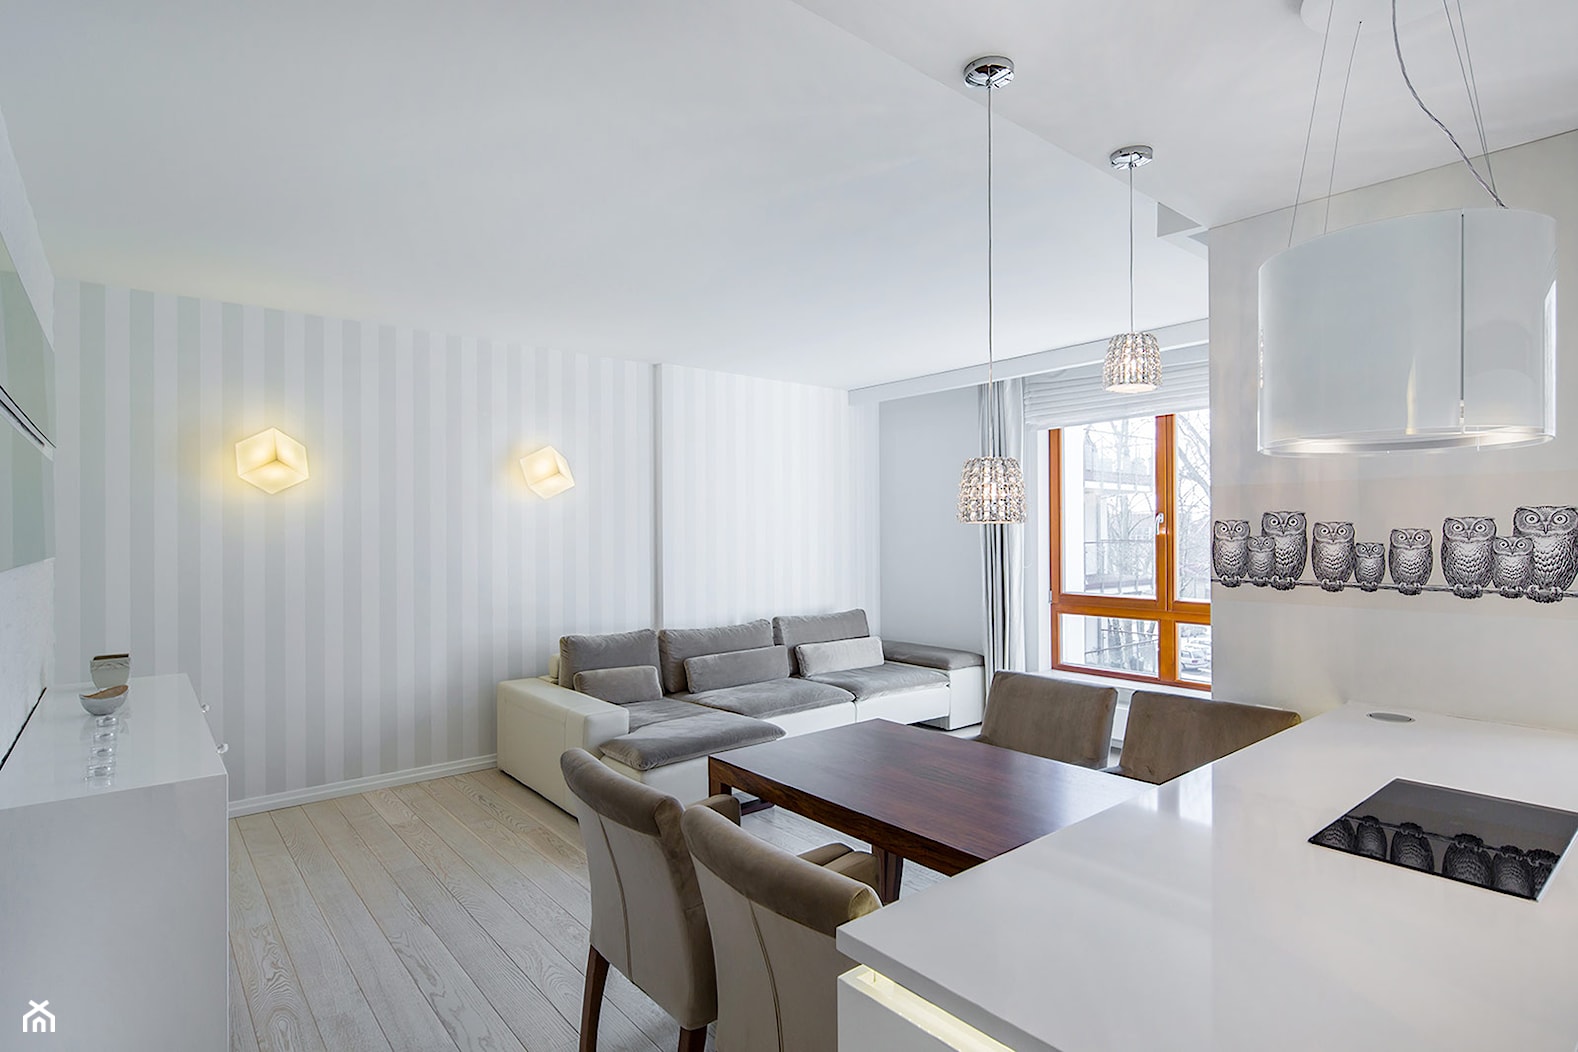 Apartament Aquarius – Sopot - Salon, styl nowoczesny - zdjęcie od Magdalena Ubysz - Fotografia architektury i wnętrz - Homebook